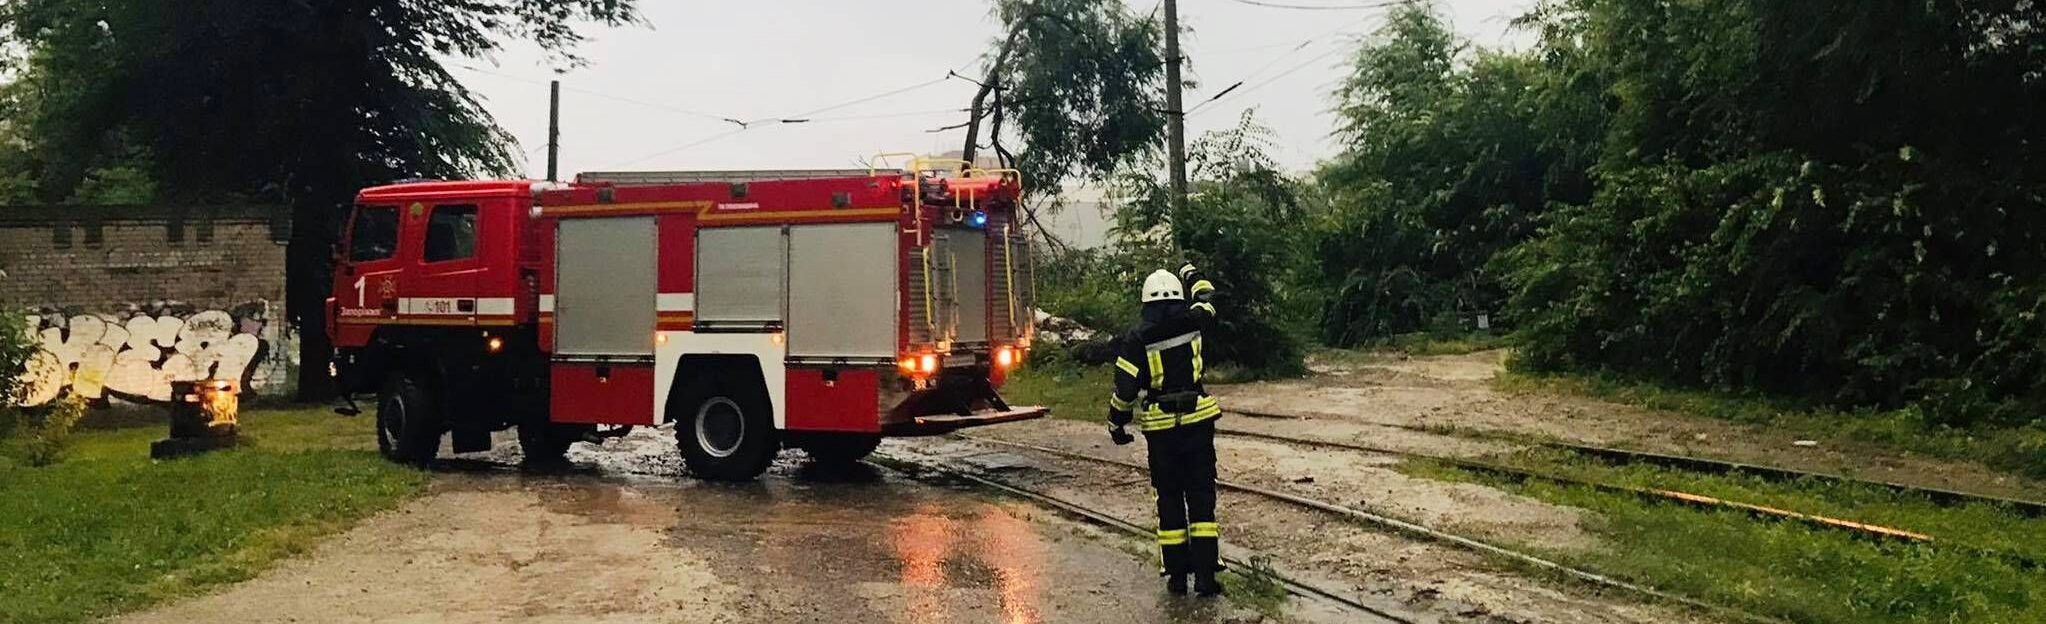 Шквальный ветер, гроза и сильный дождь в Запорожье повалили деревья (ФОТО, ВИДЕО)